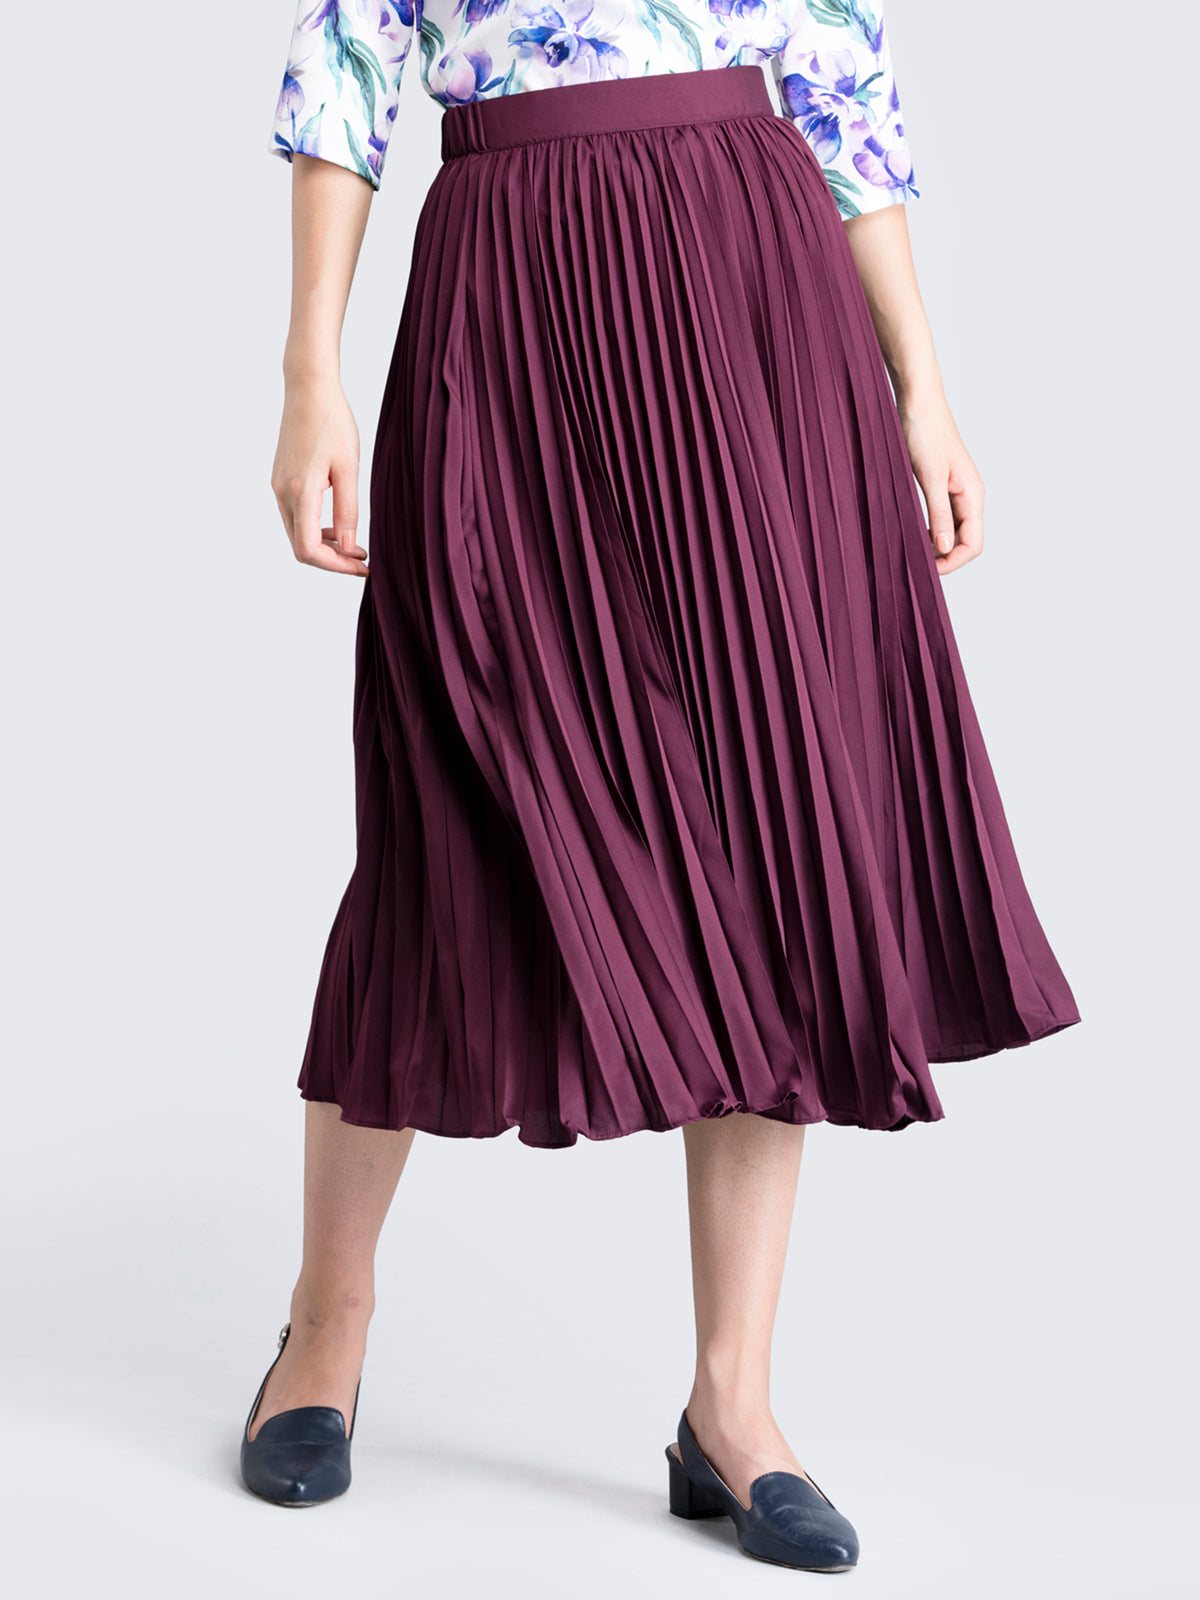 Pleated Flared Midi Skirt - Wine